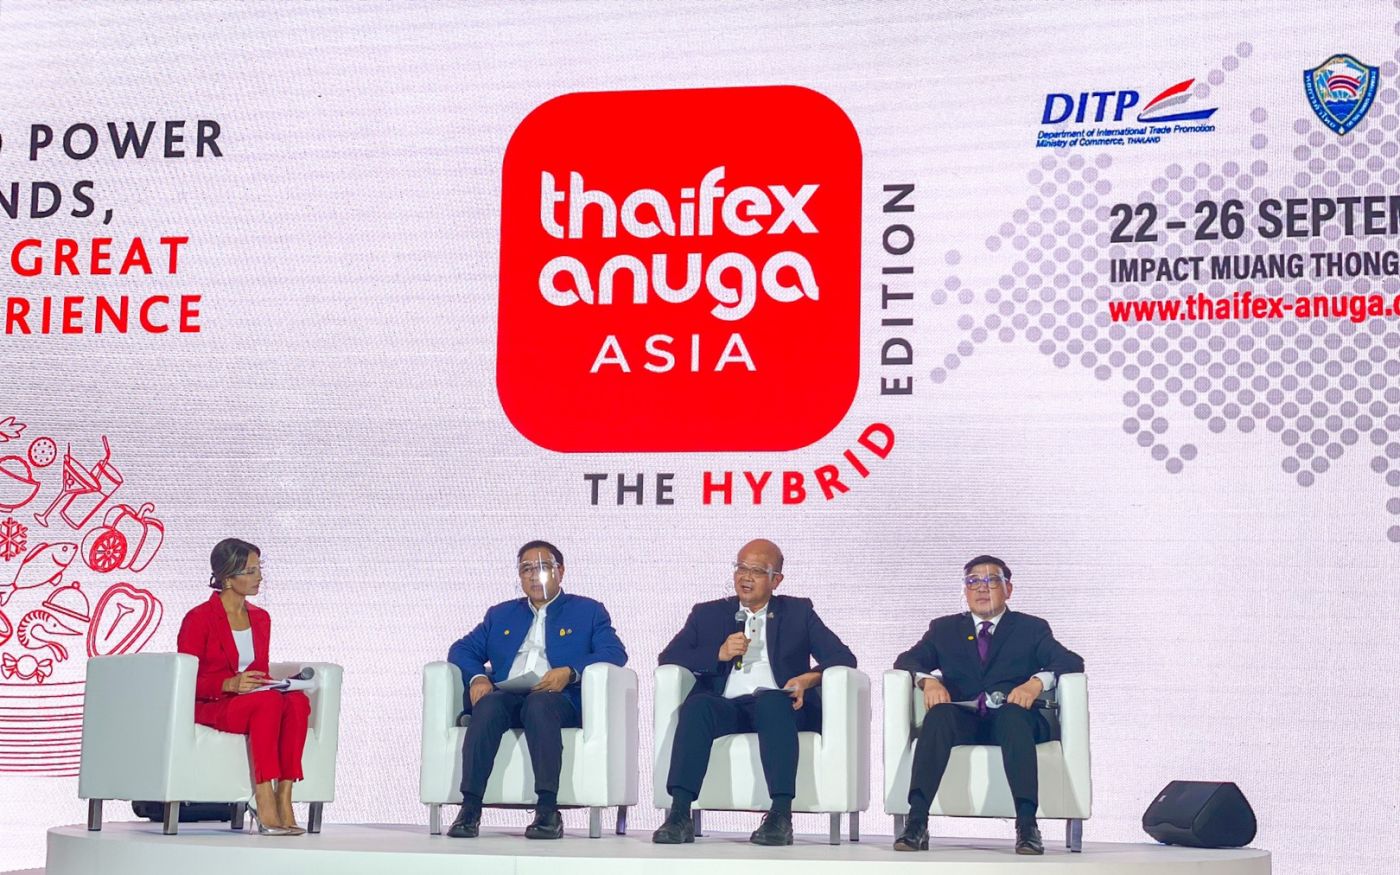 กรมส่งเสริมการค้าระหว่างประเทศ หอการค้าไทย และโคโลญเมสเซ่ ยืนยันจัดงาน “THAIFEX – ANUGA ASIA 2020” ในรูปแบบใหม่ “The Hybrid Edition” เปิดเจรจาซื้อขายทั้งออฟไลน์และออนไลน์ 22-26 กันยายน2563